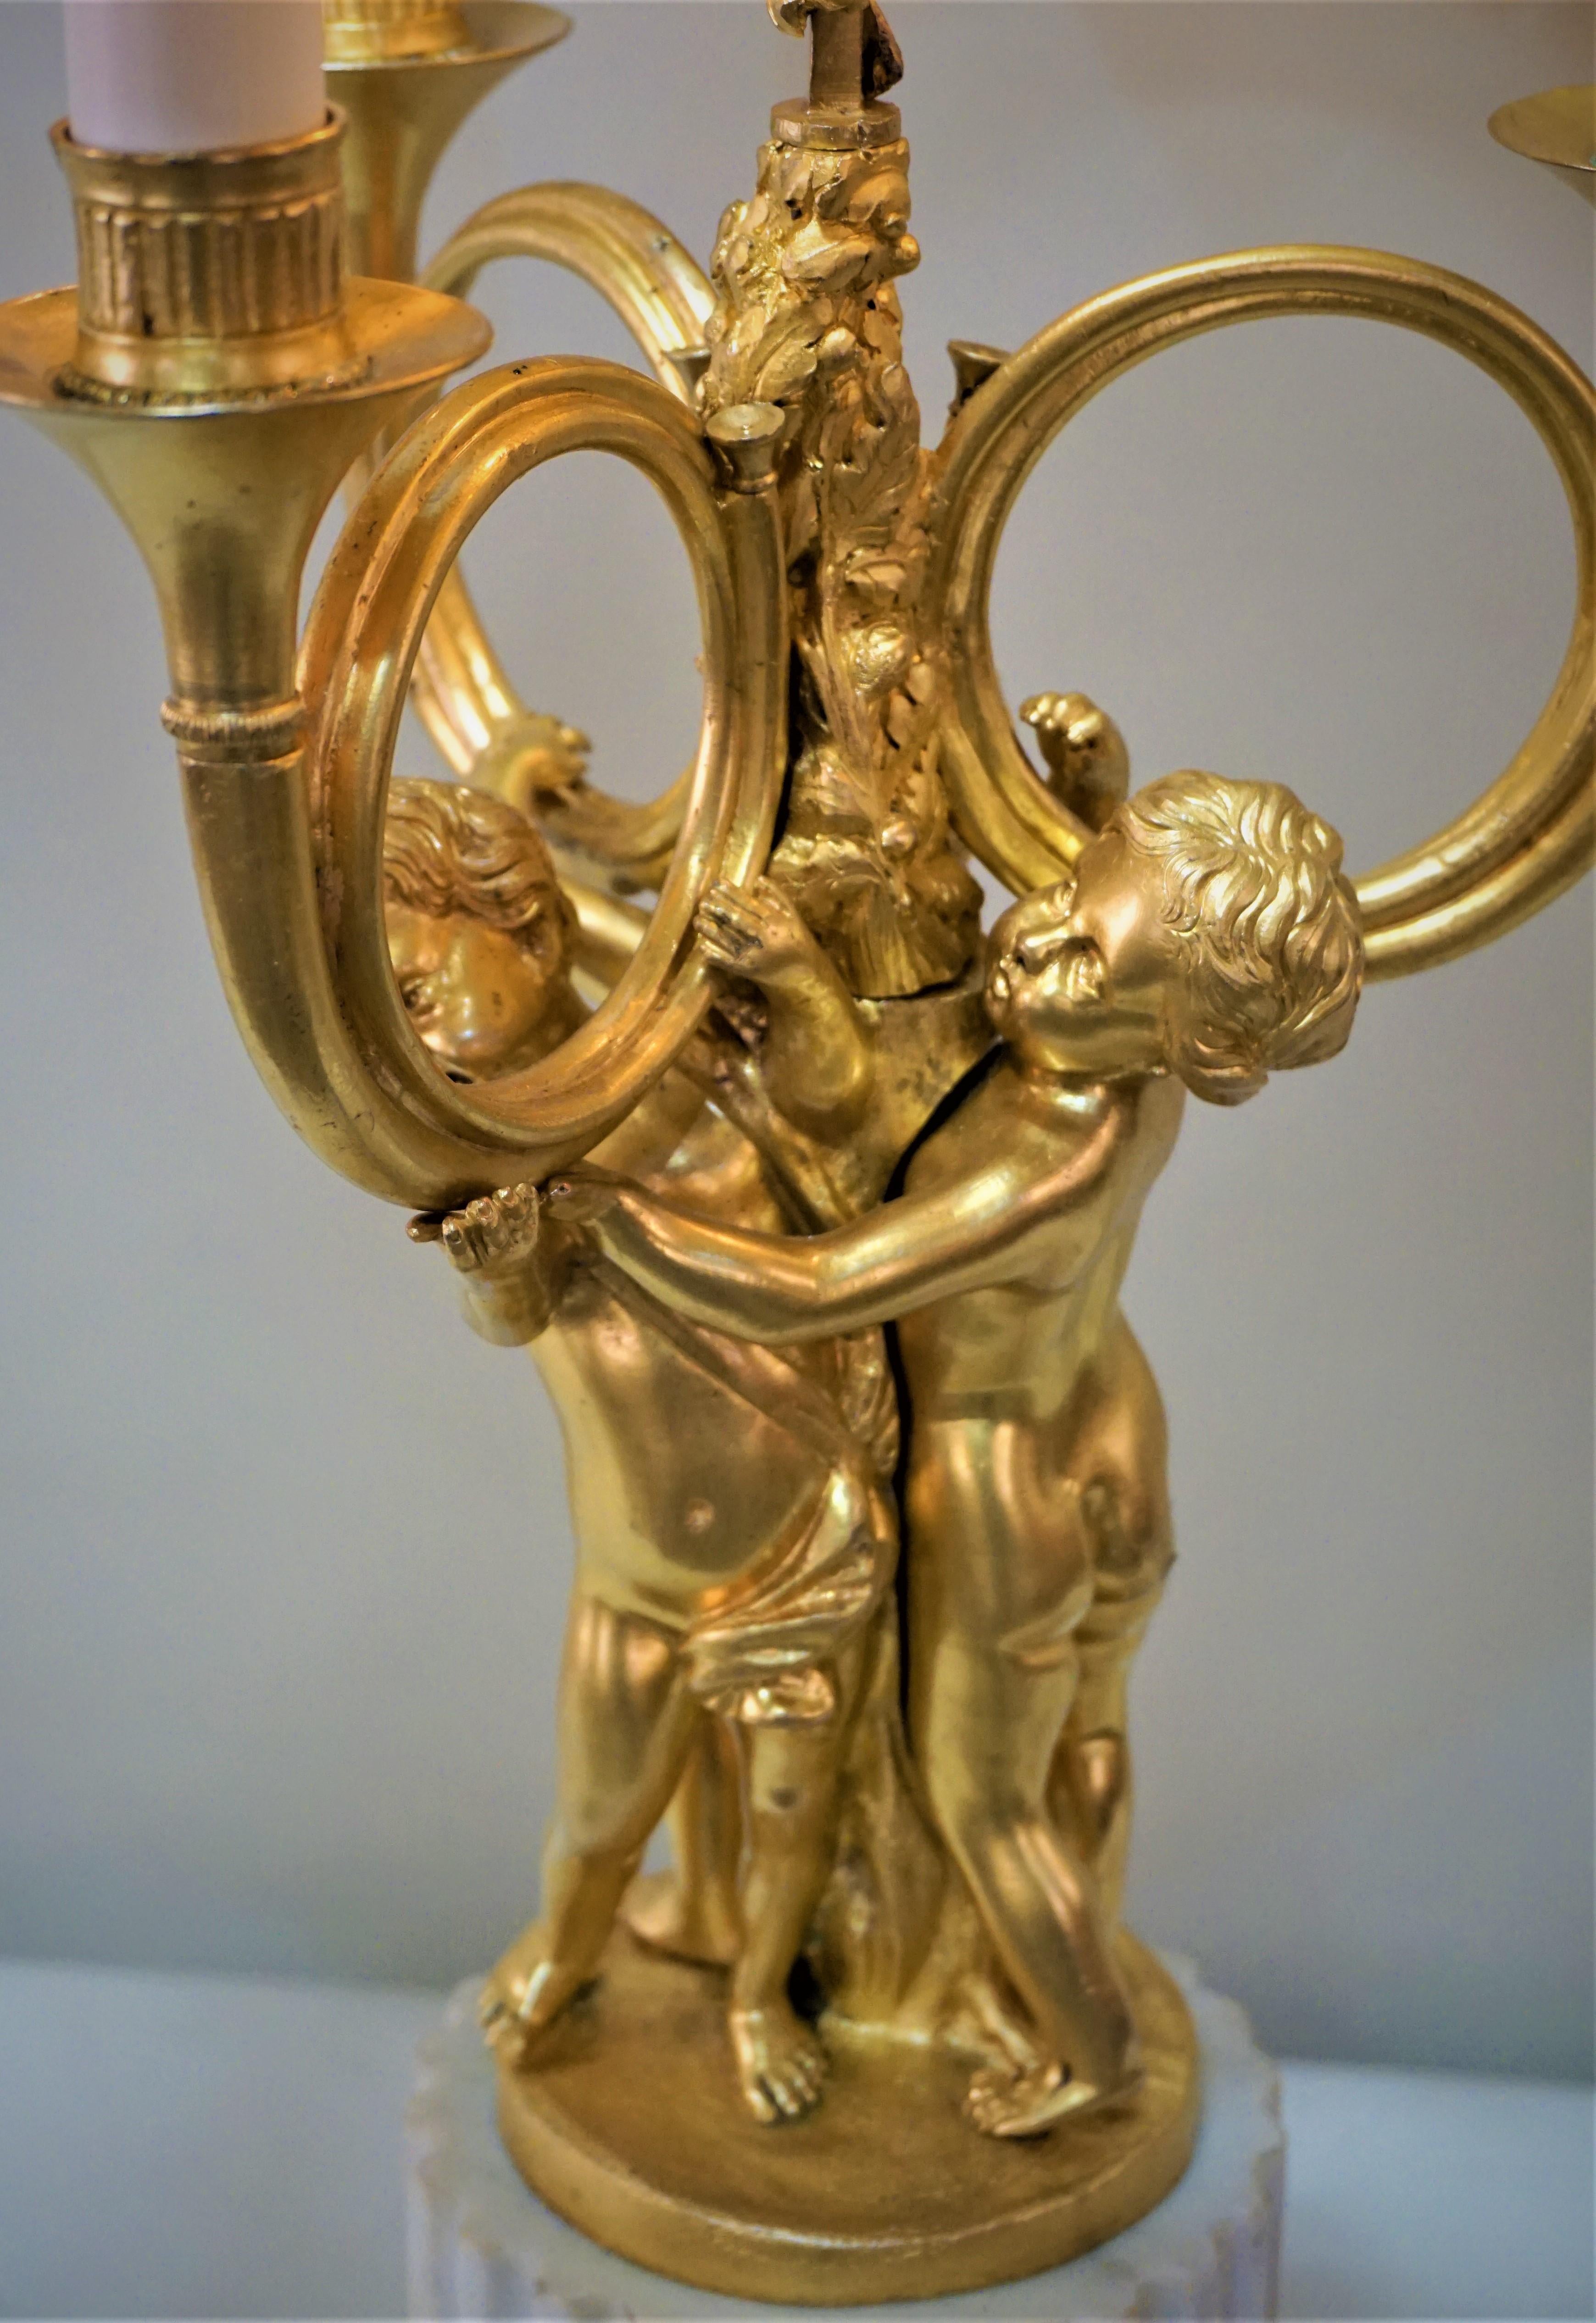 Bronze-Dore-Bouillotte-Tischlampe im französischen Empire-Stil (Vergoldet)